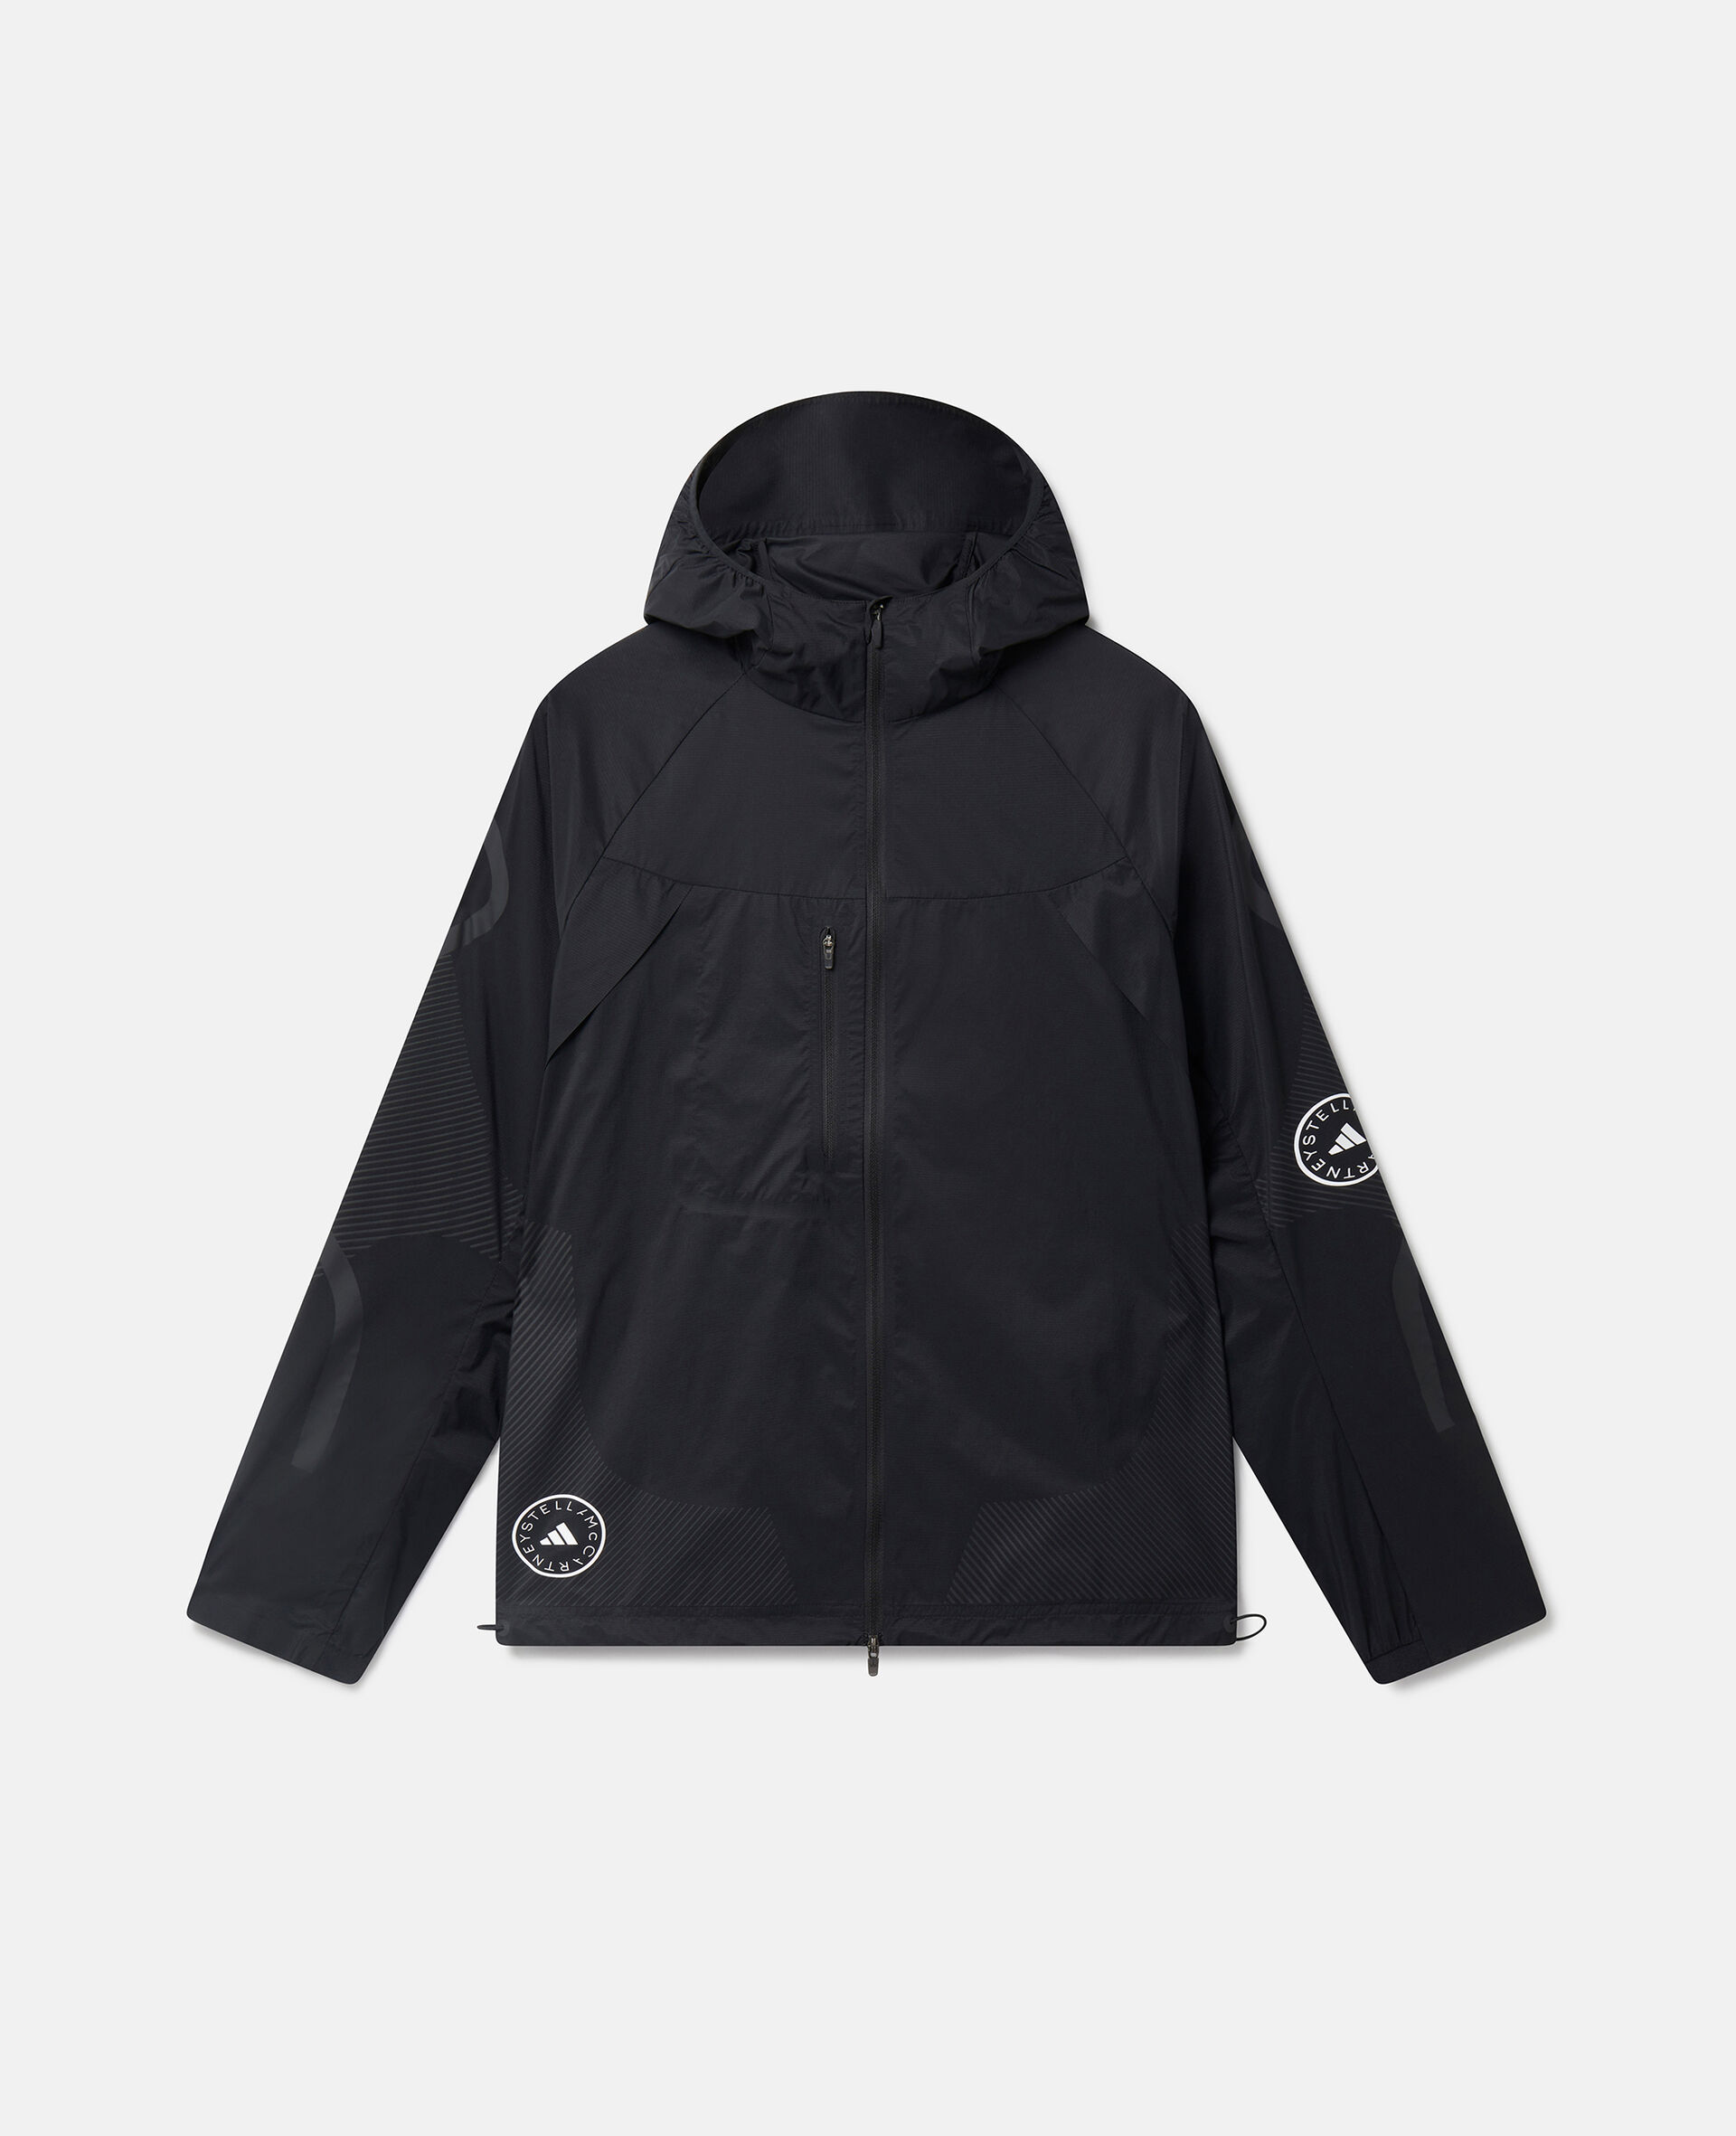 TruePace Hooded Running Jacket-Black-medium